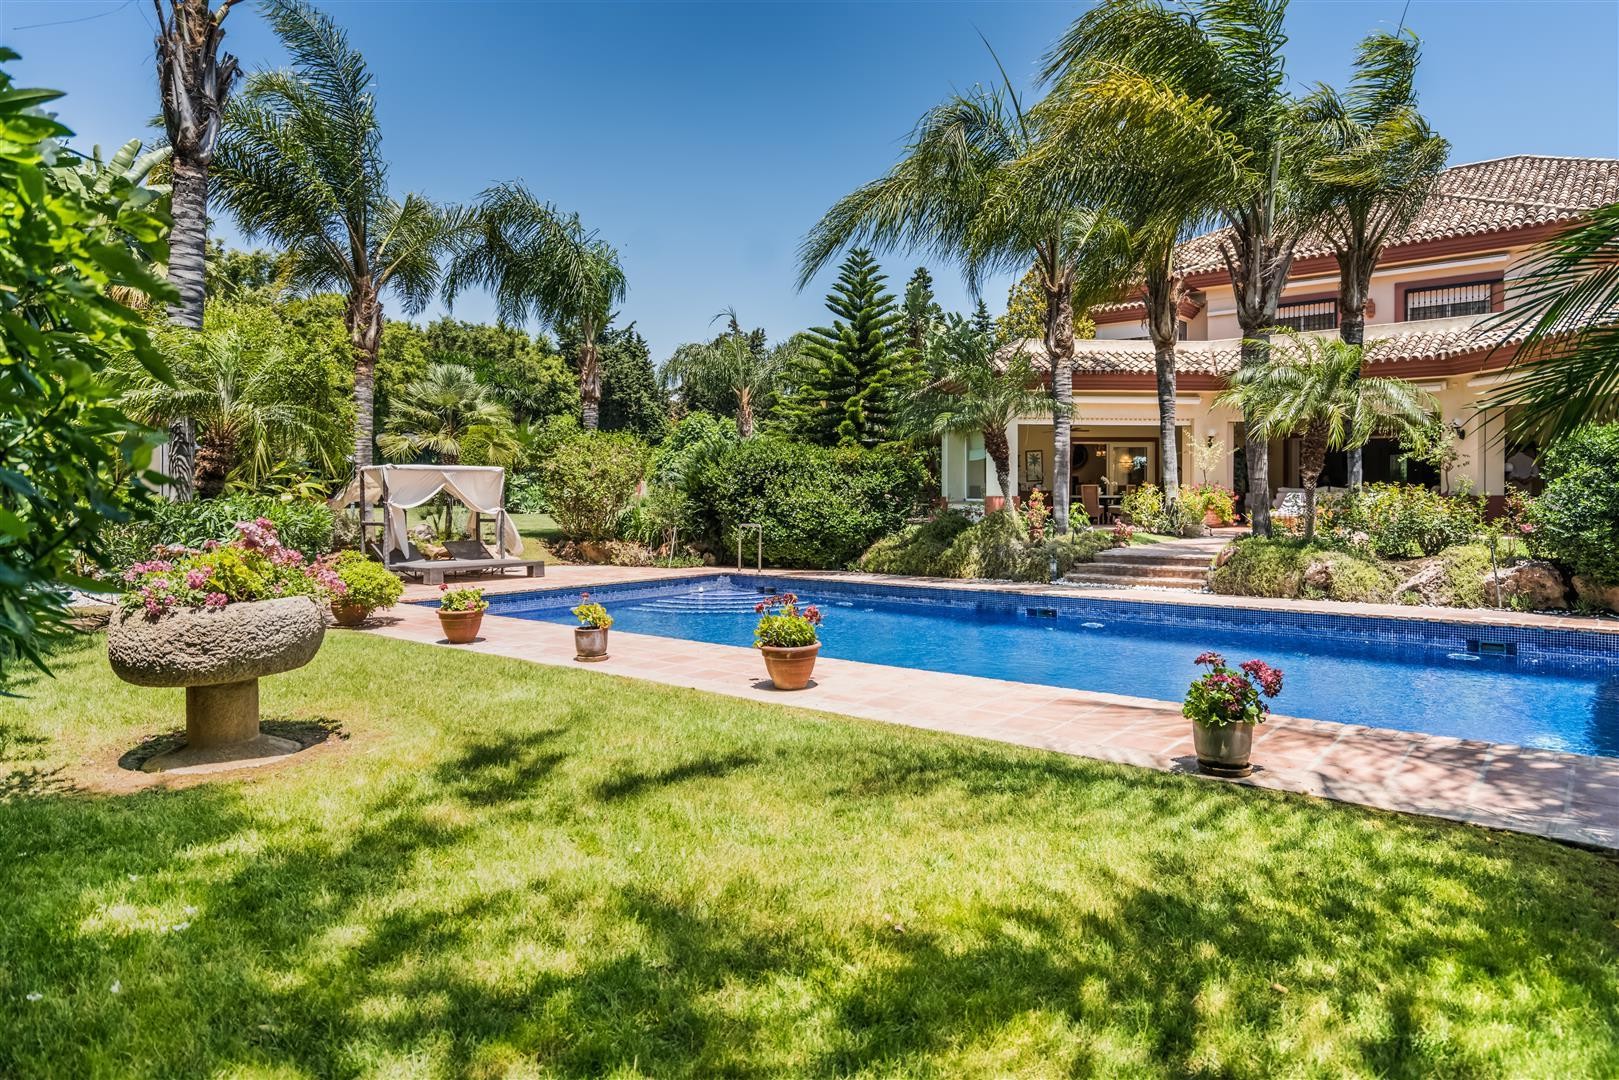 Villa for sale Marbella West Spain (21) (Large) (Large)